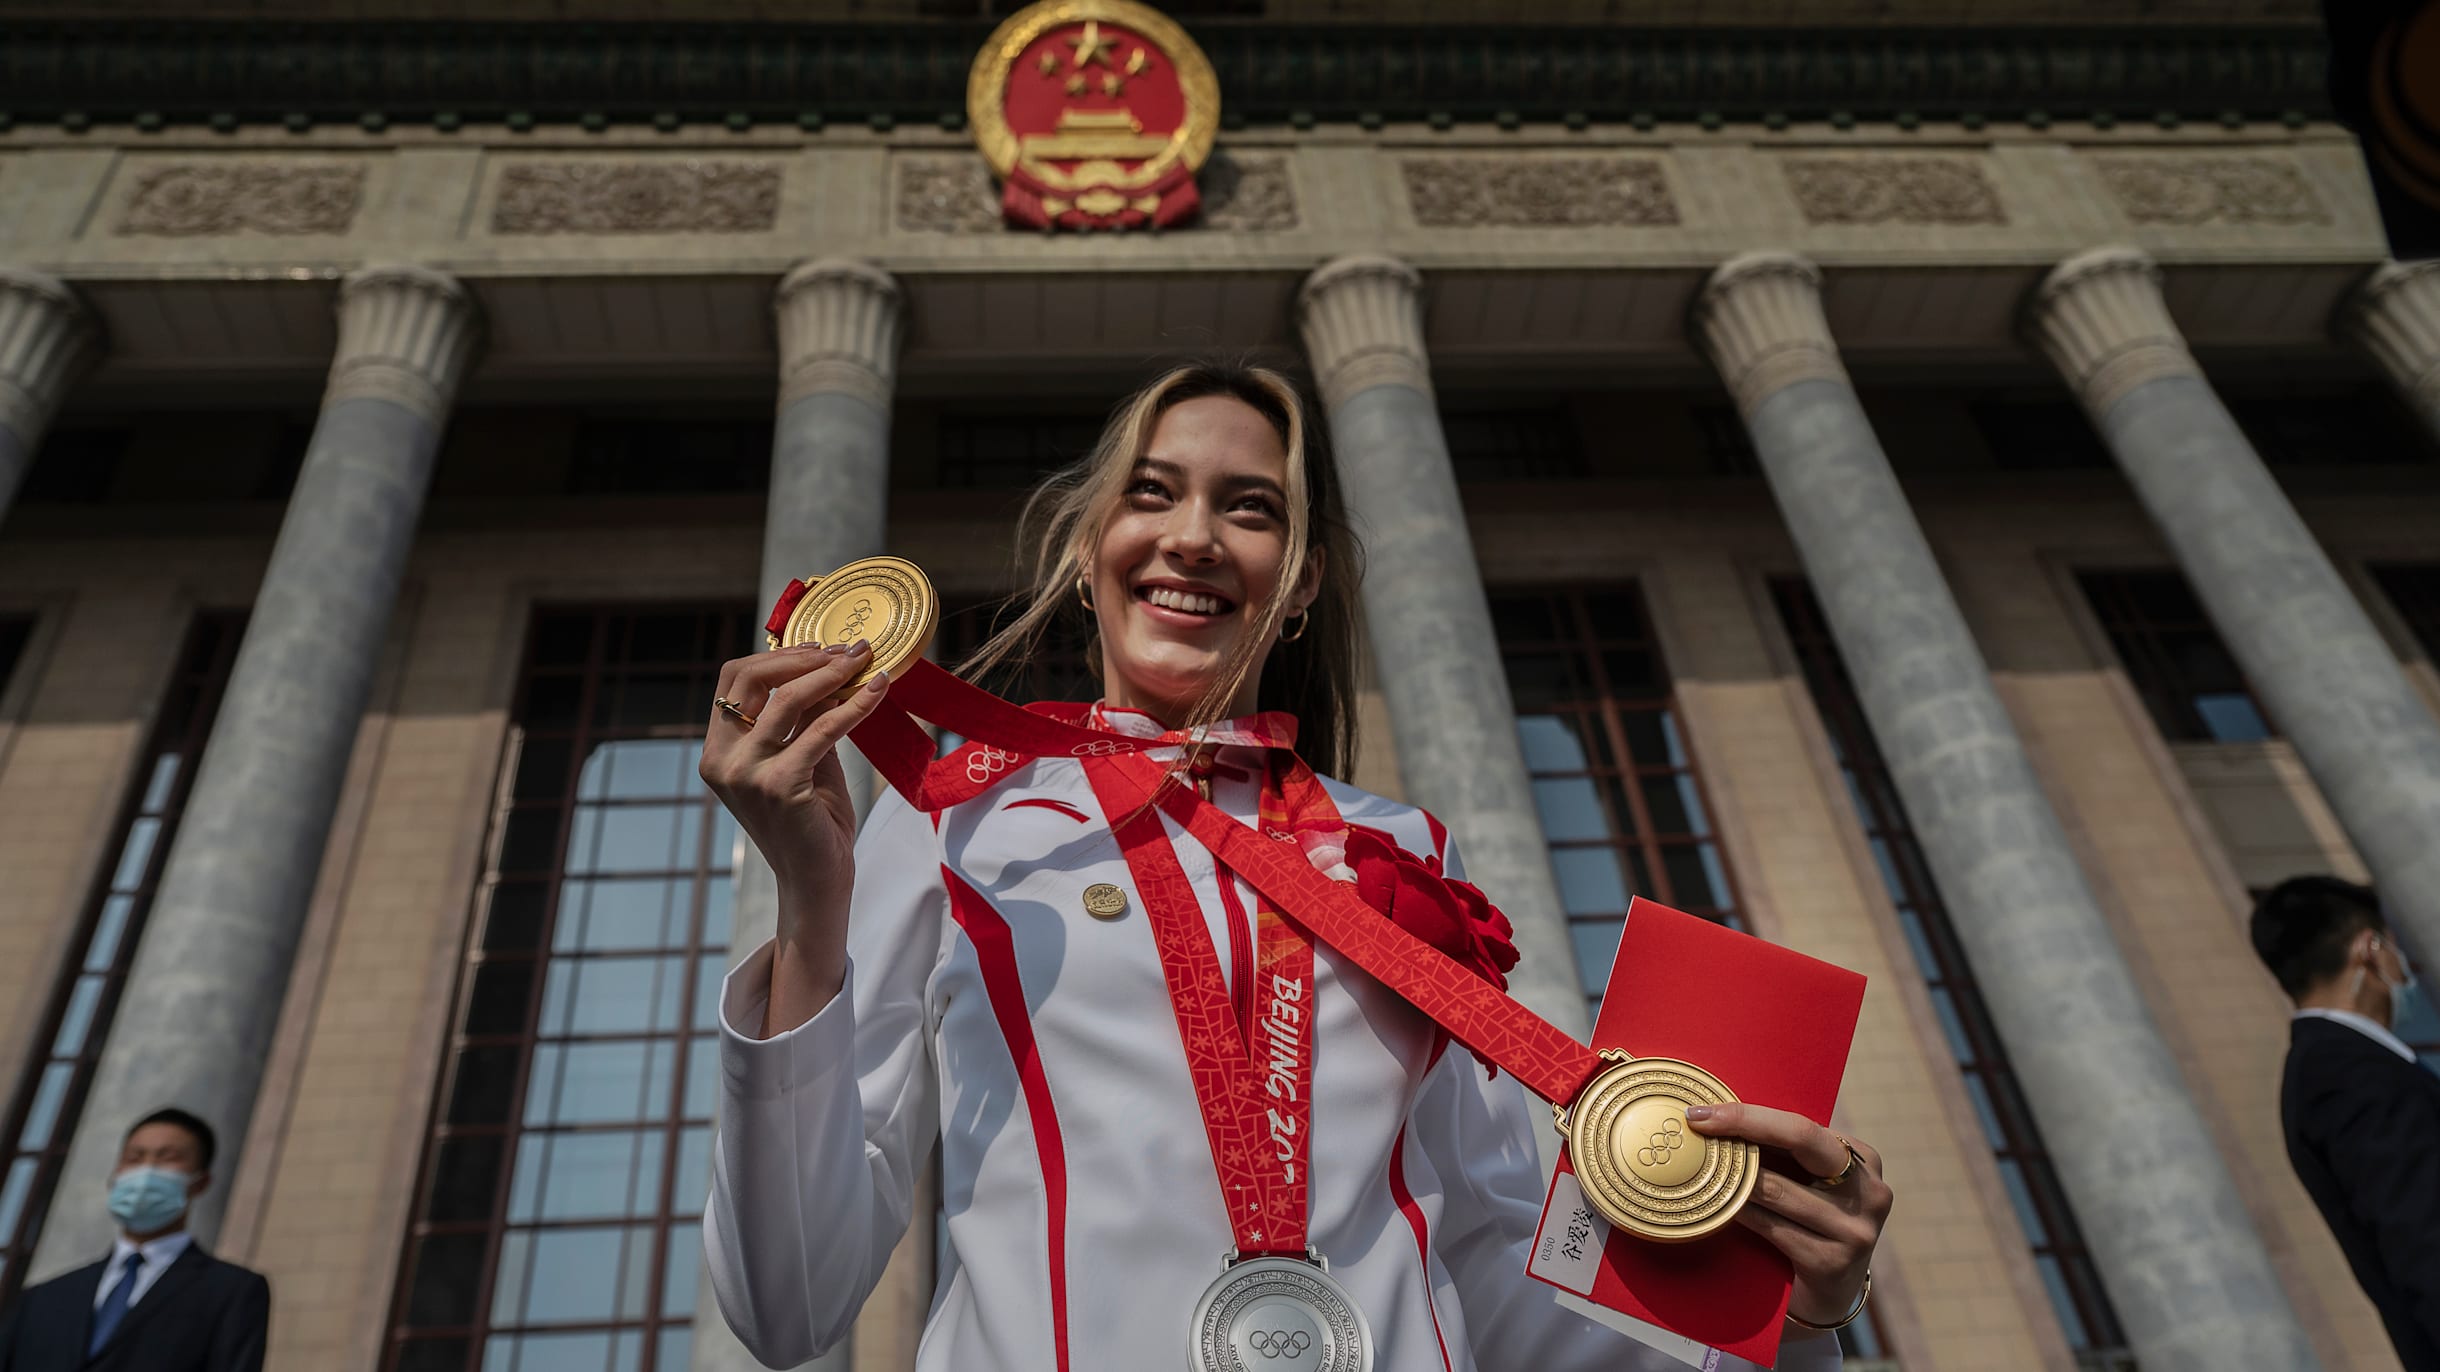 Poster-girl for Beijing 2022, Eileen Gu is a gold medal winner